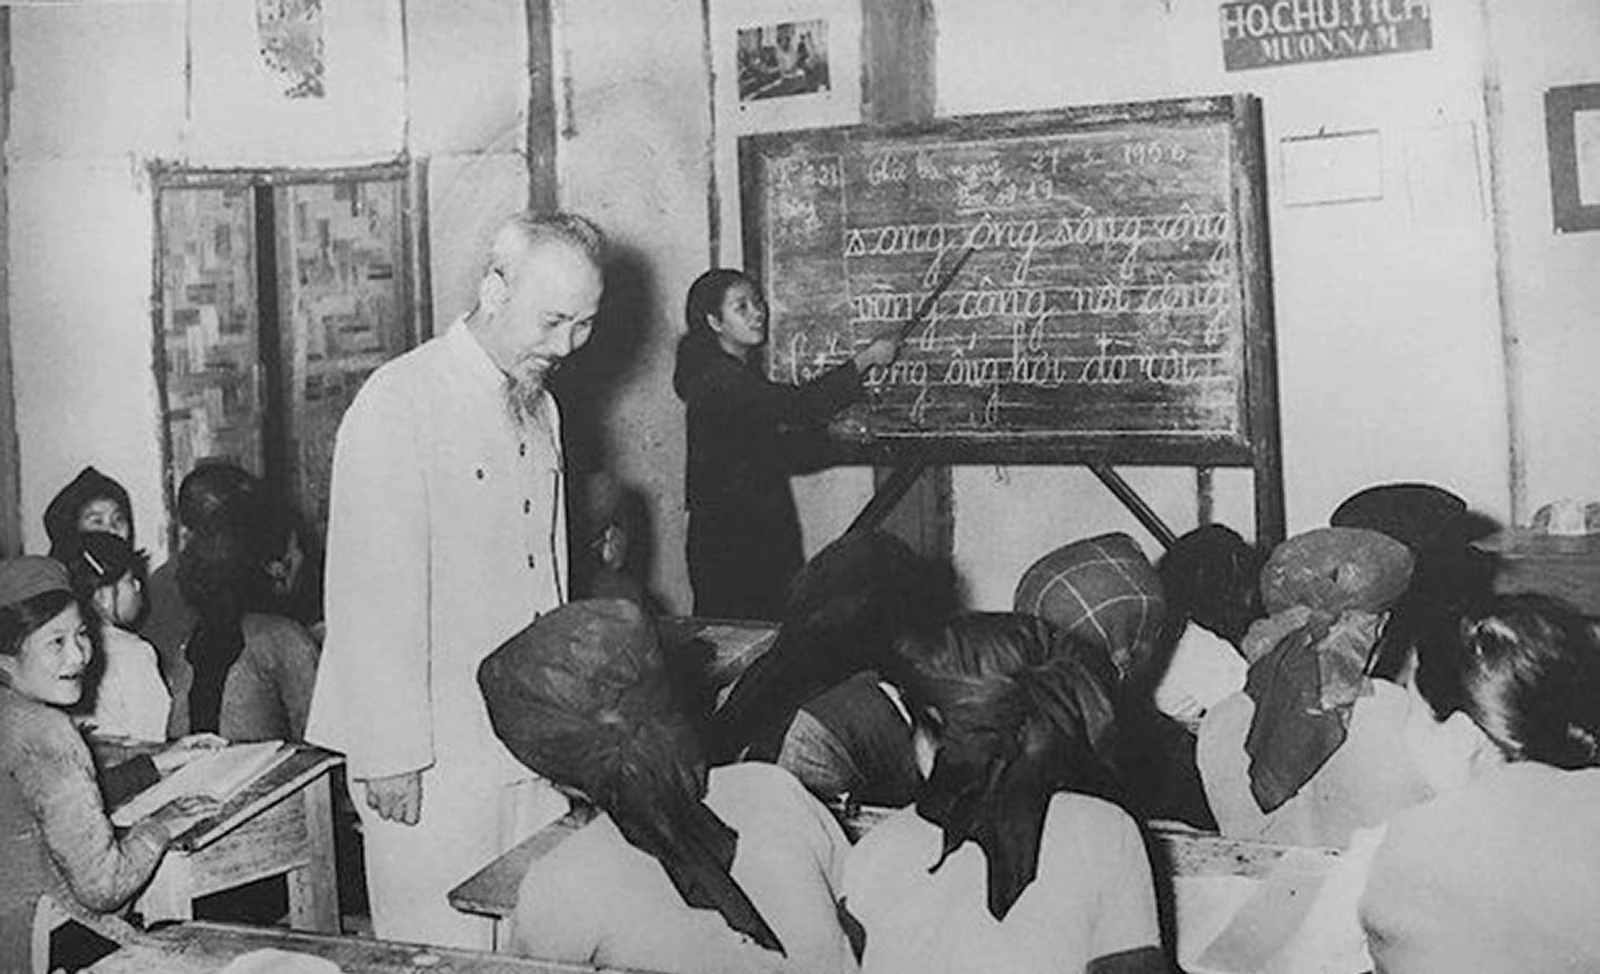 Chủ tịch Hồ Chí Minh thăm lớp học của công nhân Nhà máy 1-5 (Hà Nội), lá cờ đầu của phong trào bổ túc văn hóa ngành công nghiệp, ngày 19-12-1963 (Ảnh tư liệu).jpg